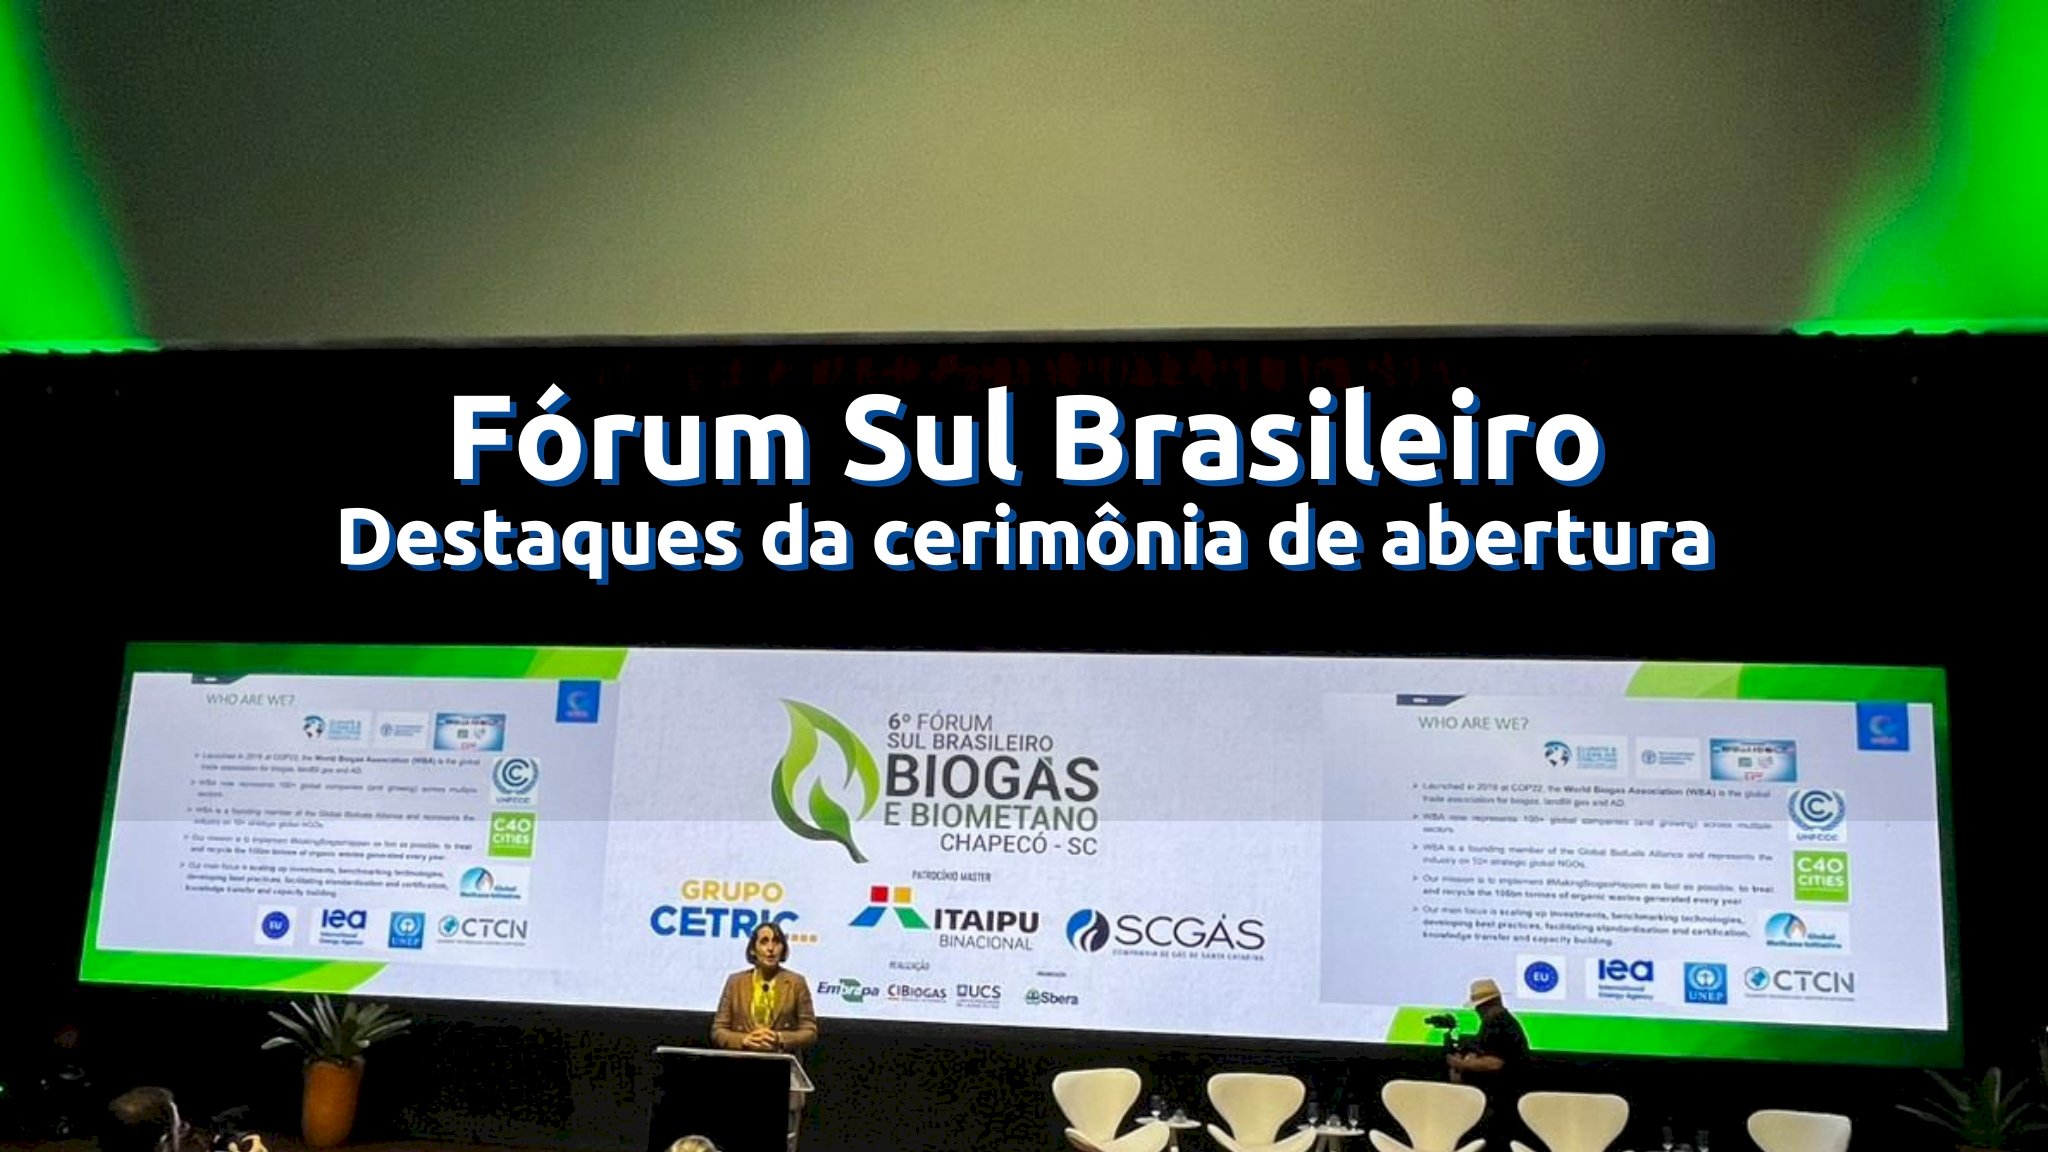 Fórum Sul Brasileiro - Destaques da cerimônia de abertura